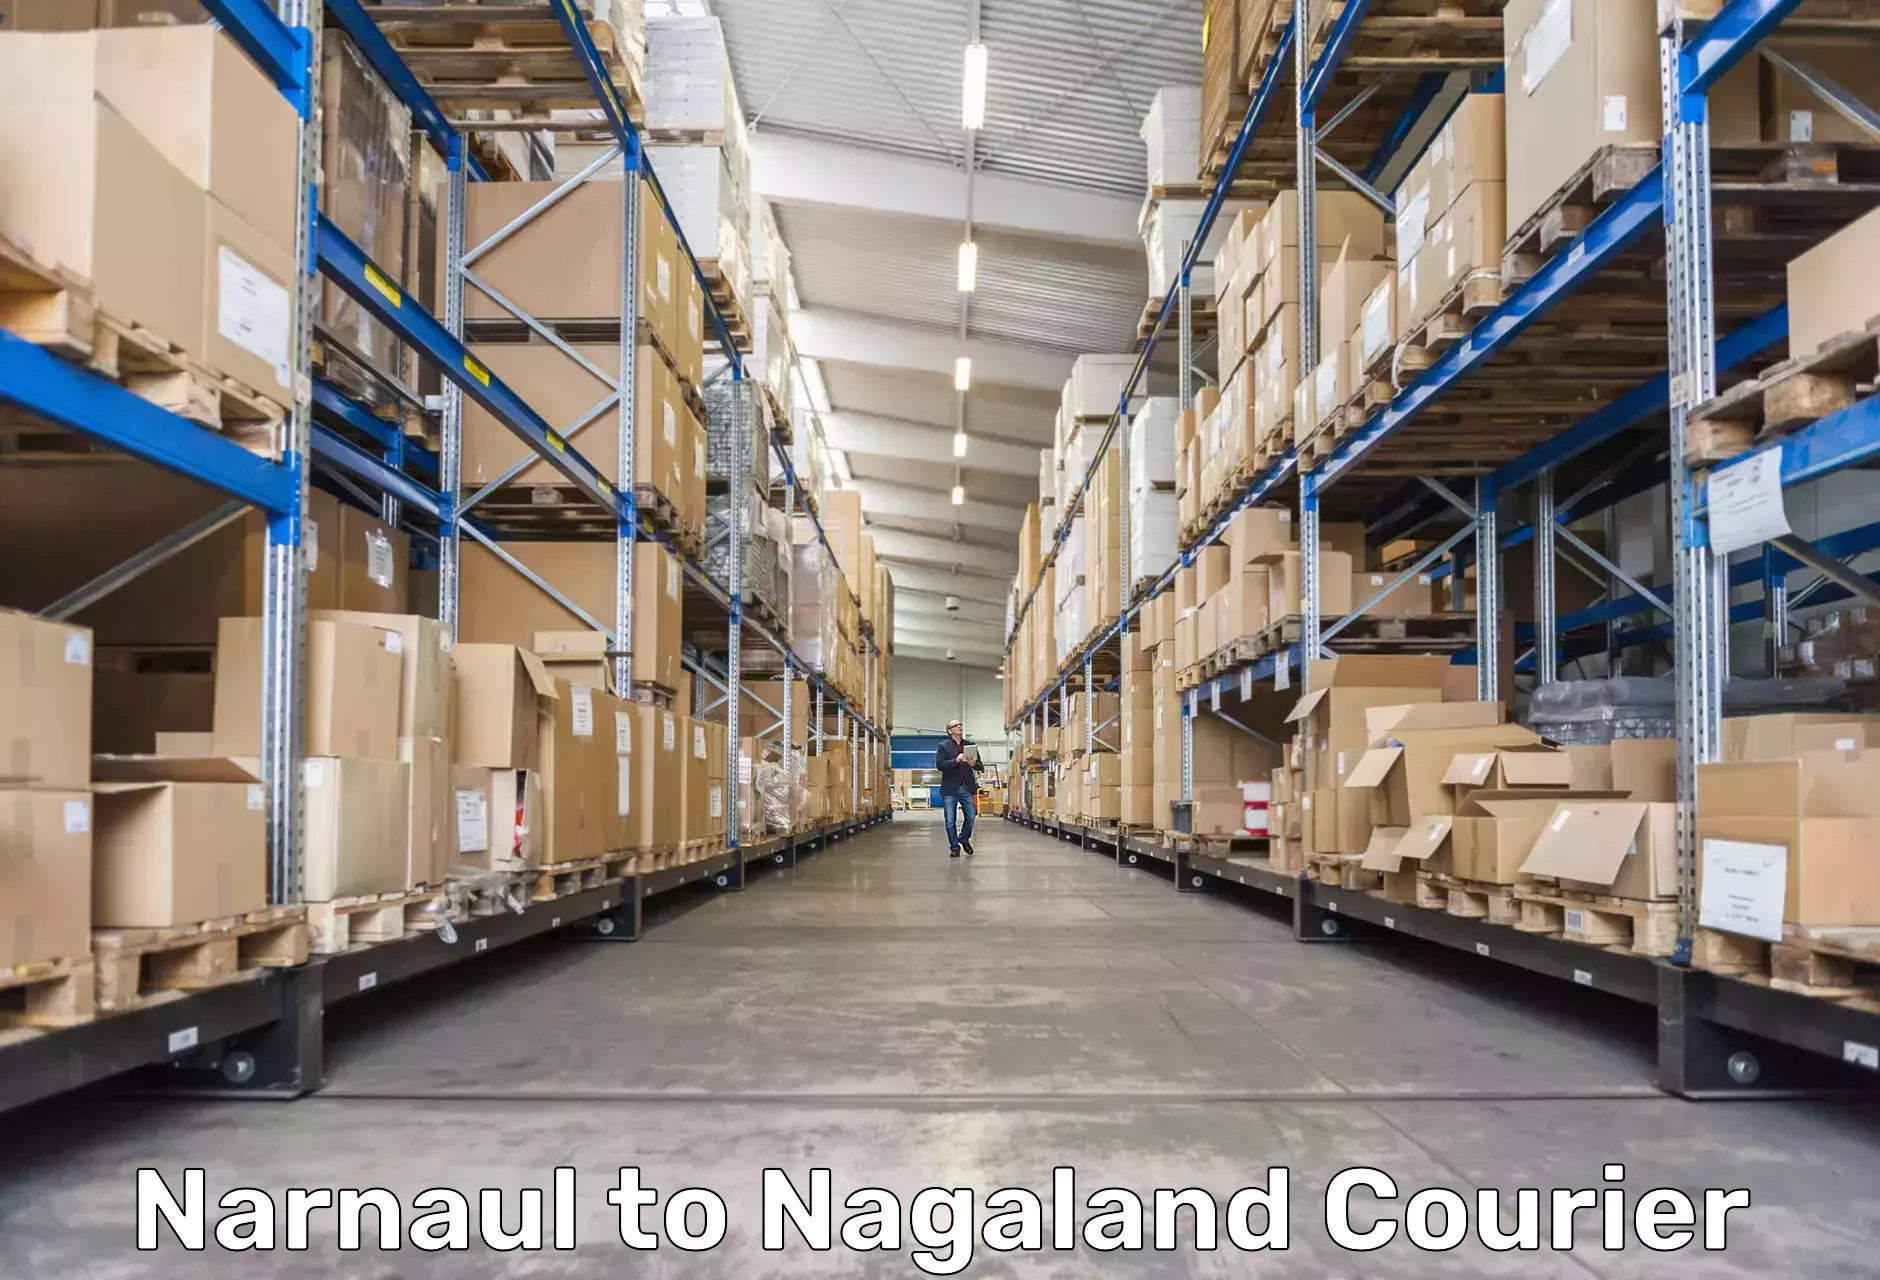 High-capacity shipping options Narnaul to NIT Nagaland